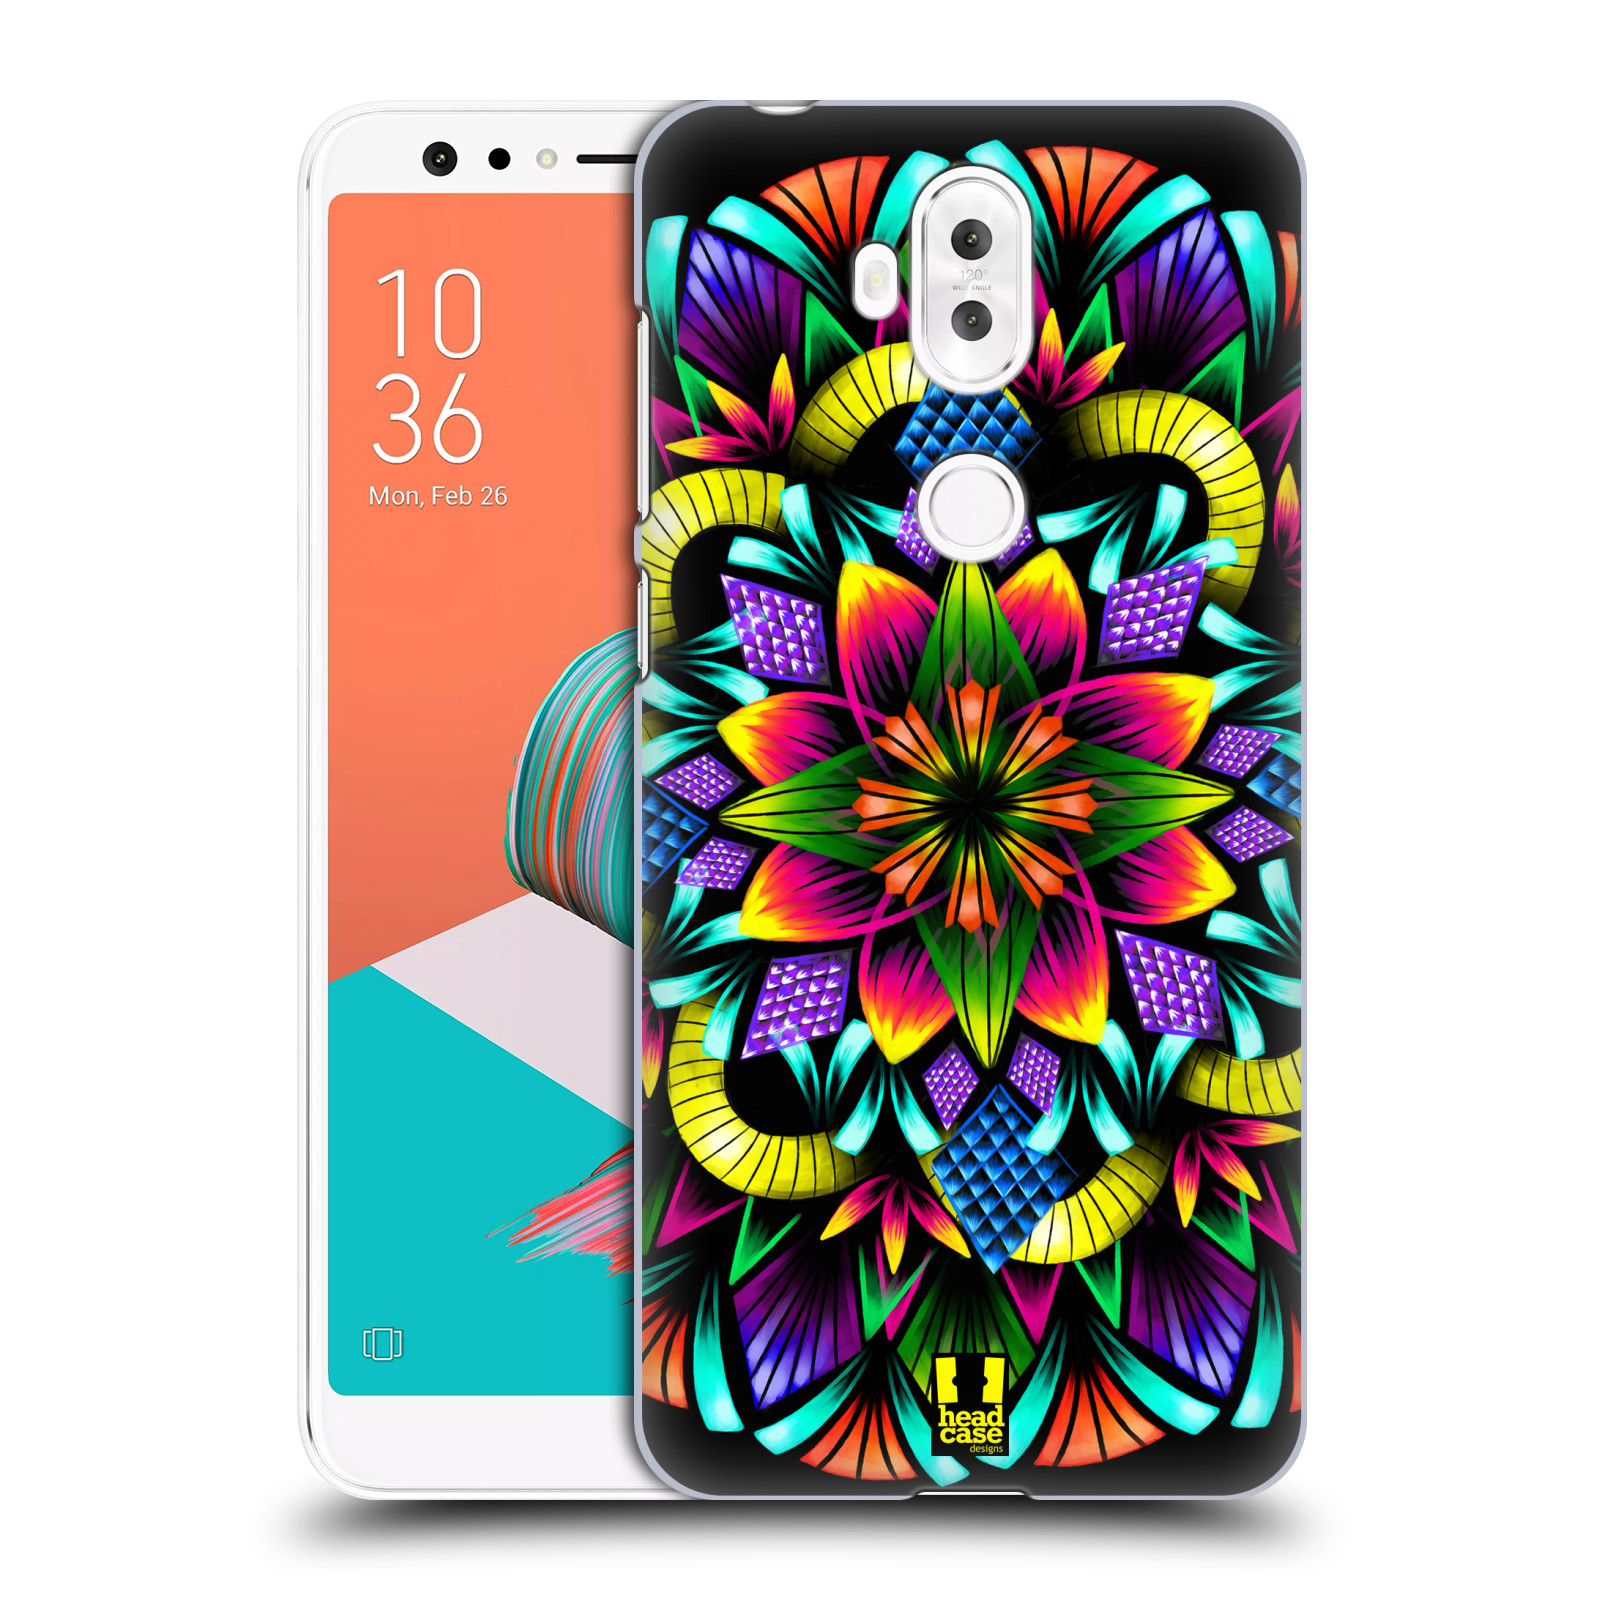 HEAD CASE plastový obal na mobil Asus Zenfone 5 LITE ZC600KL vzor Indie Mandala kaleidoskop barevný vzor KVĚTINA